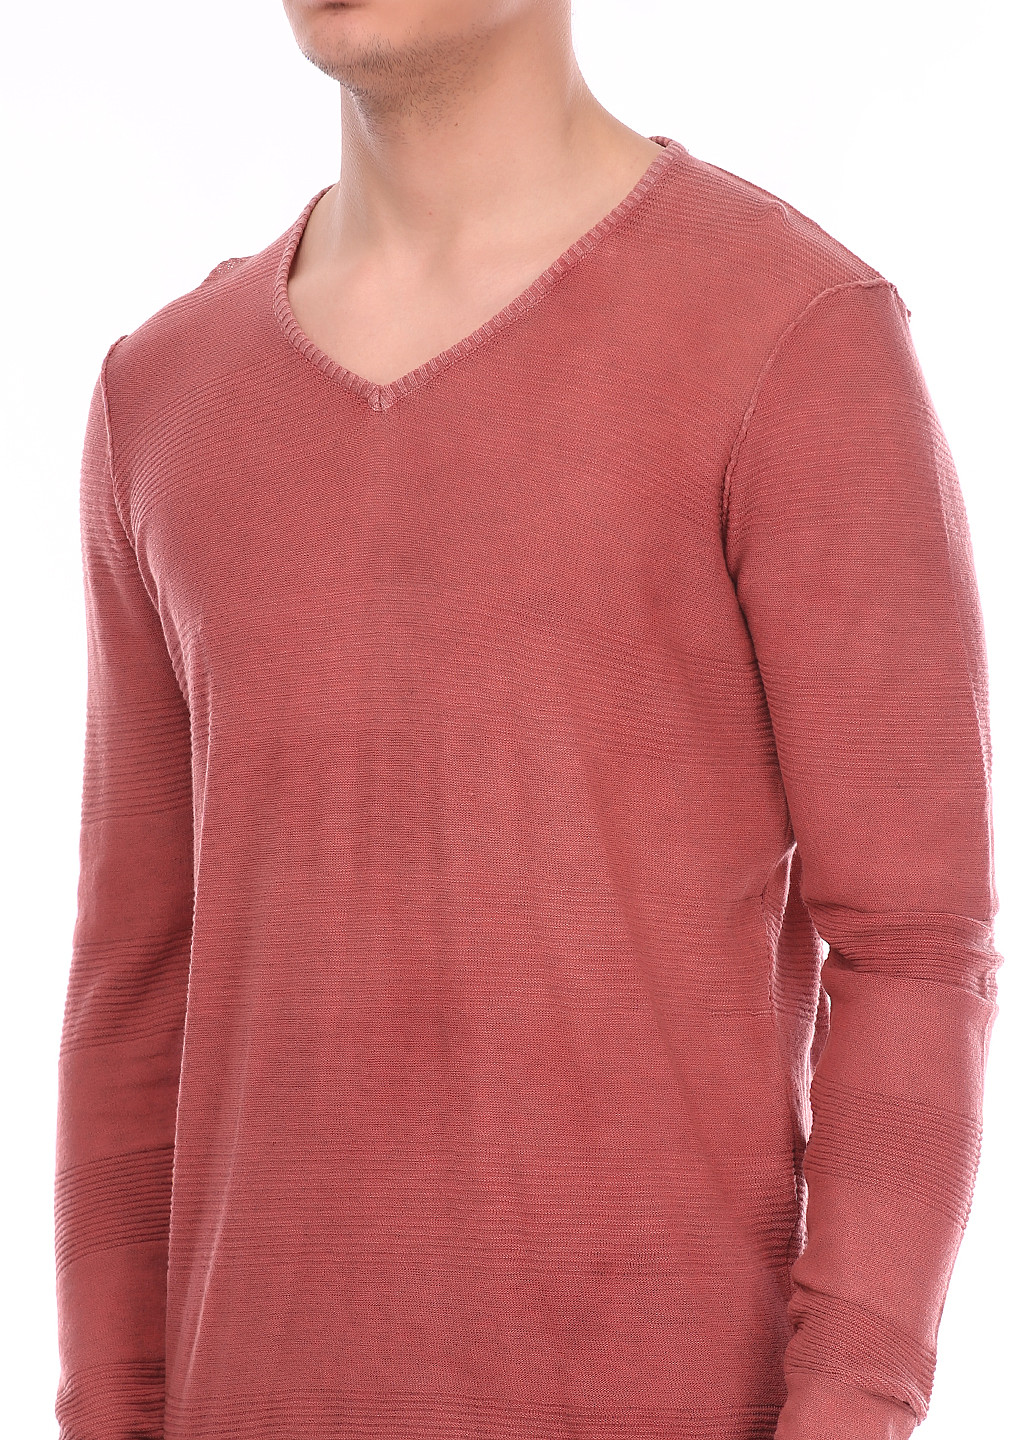 Коралловый демисезонный пуловер пуловер Colin's